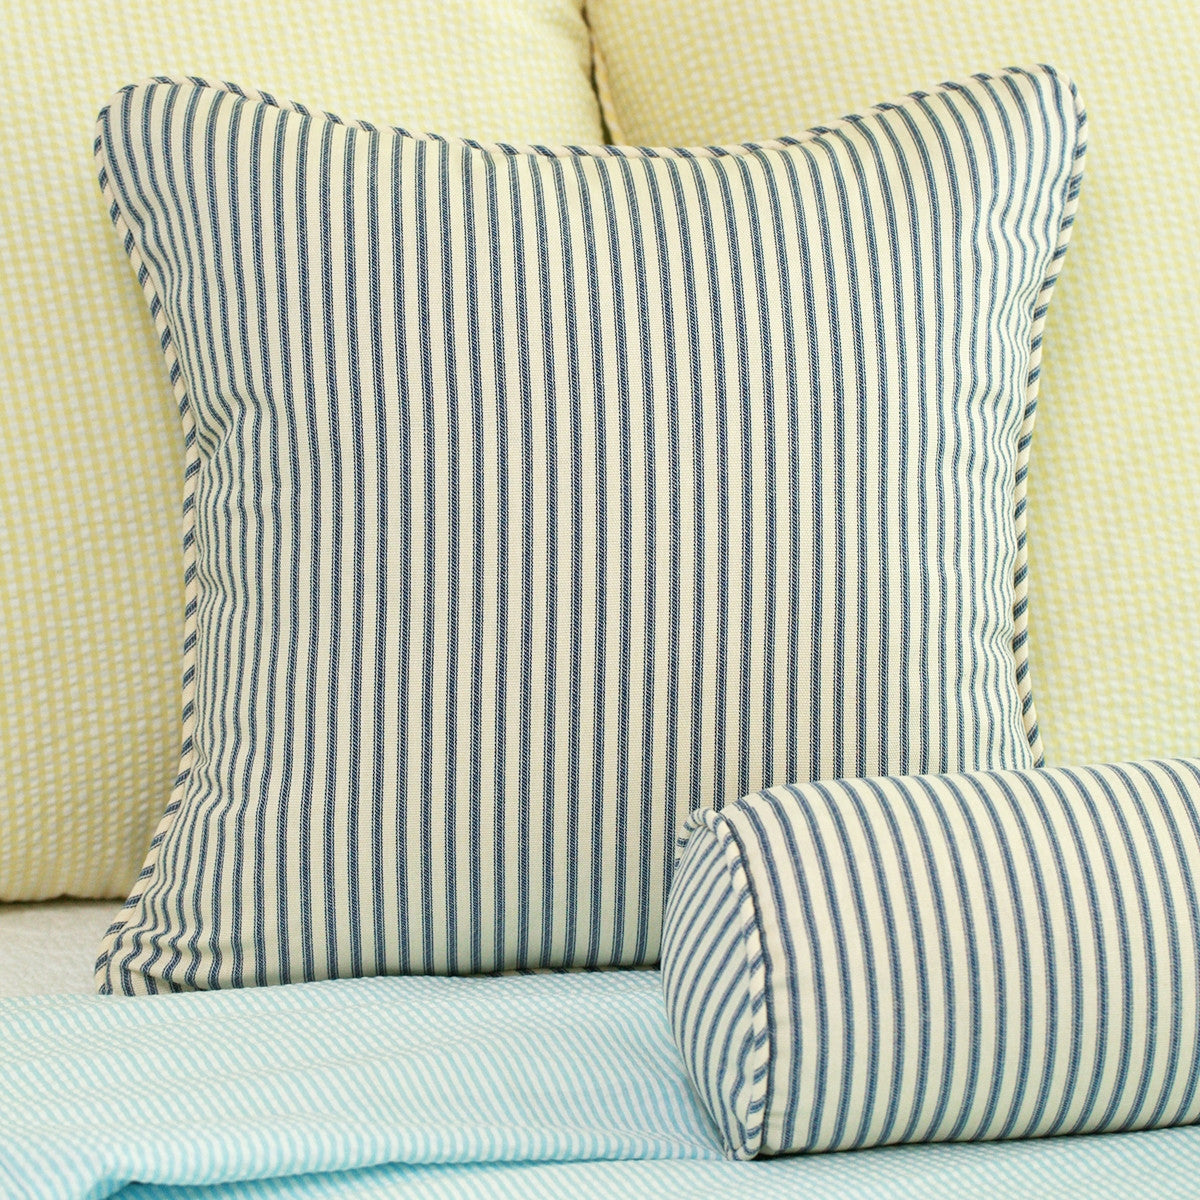 Ticking Stripe Throw Pillow Navy Blue